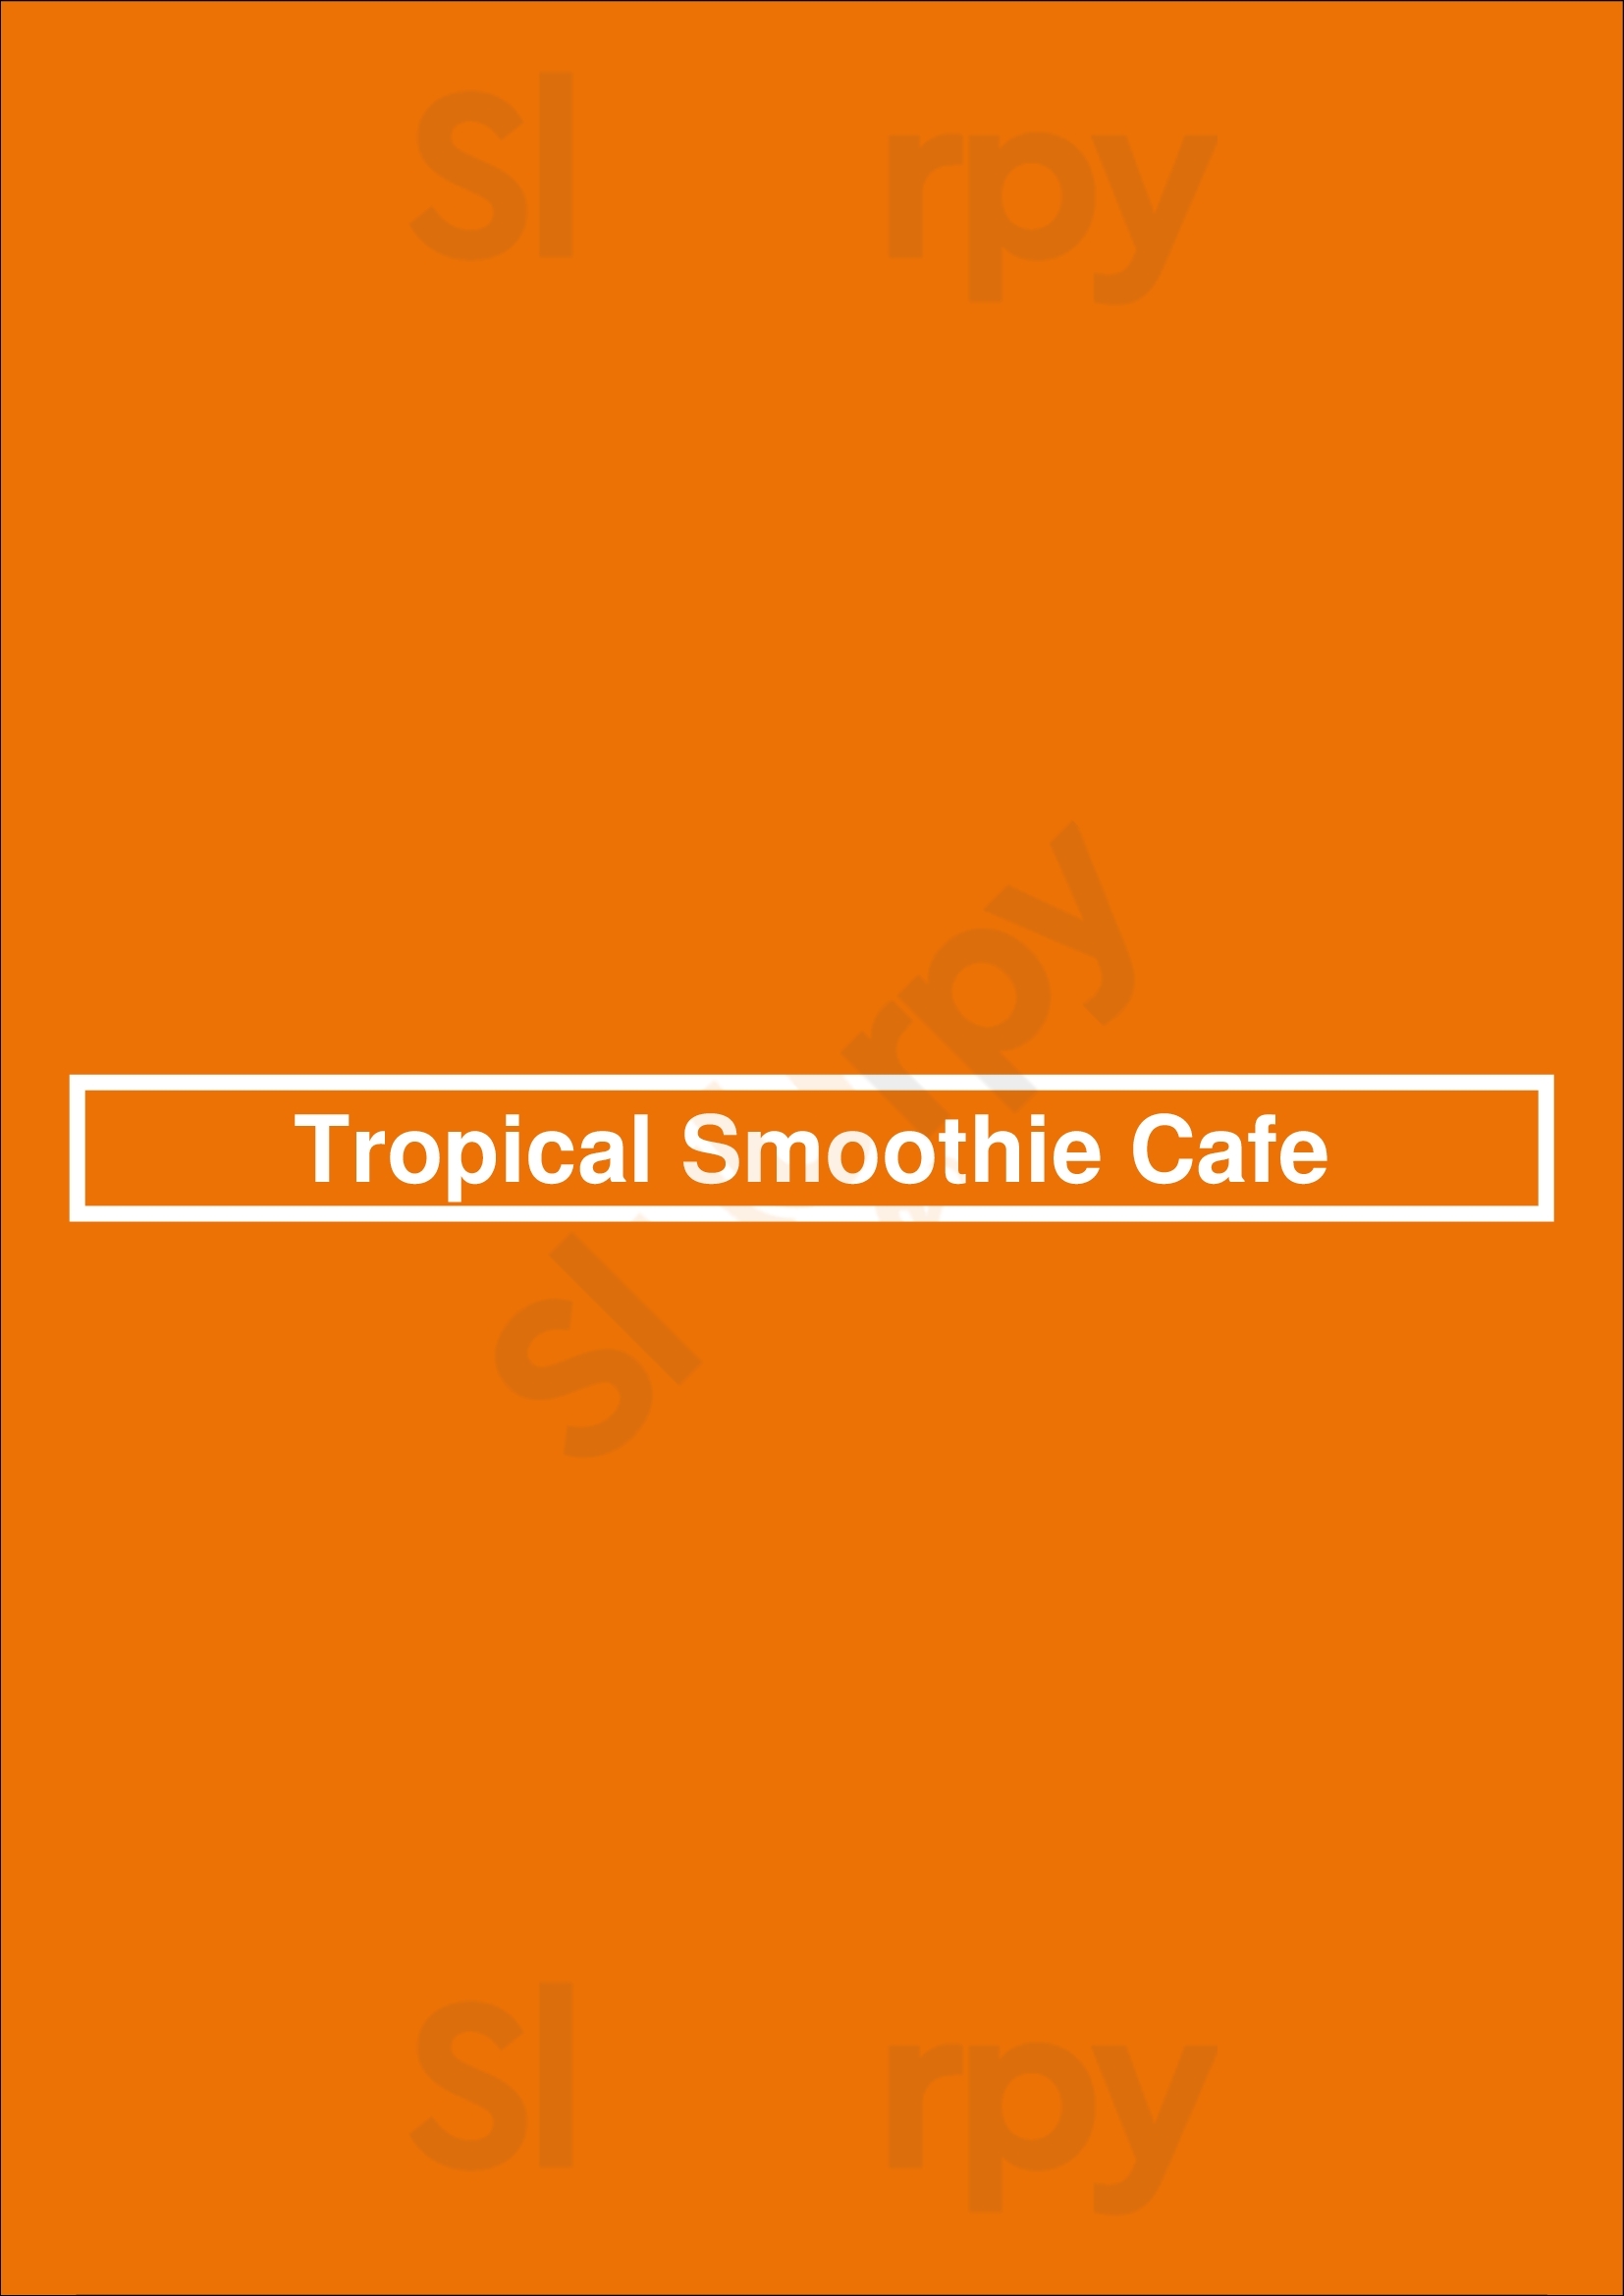 Tropical Smoothie Cafe Harrisburg Menu - 1